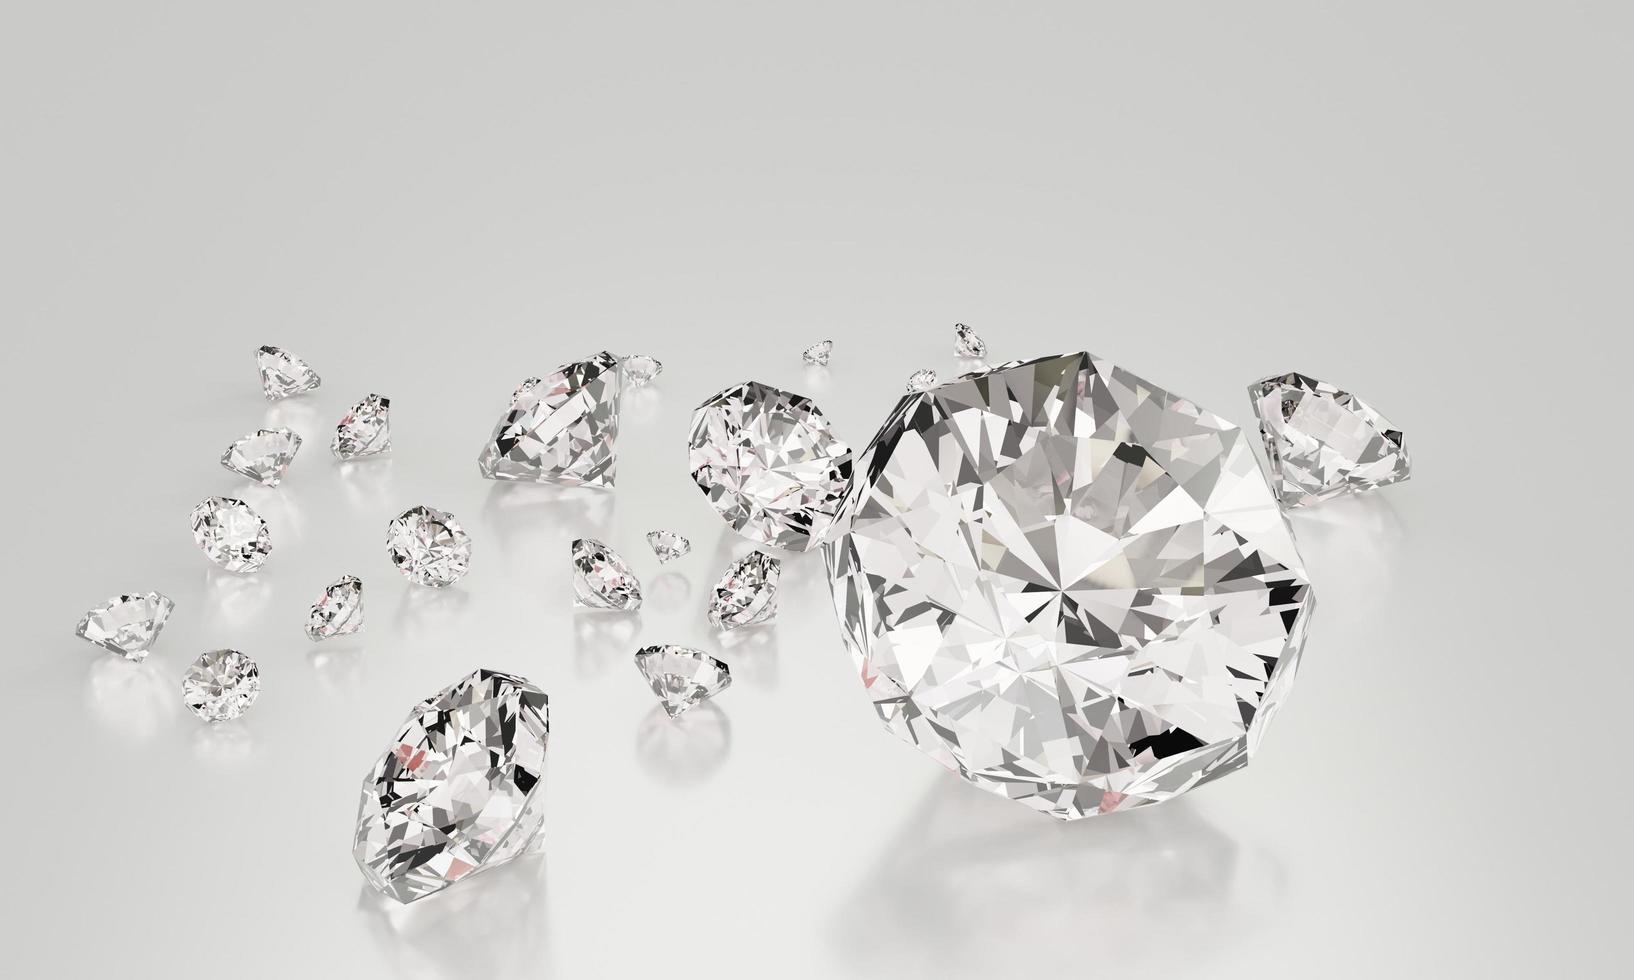 vele grootte diamanten op een witte achtergrond met reflectie op het oppervlak. 3D-rendering. foto